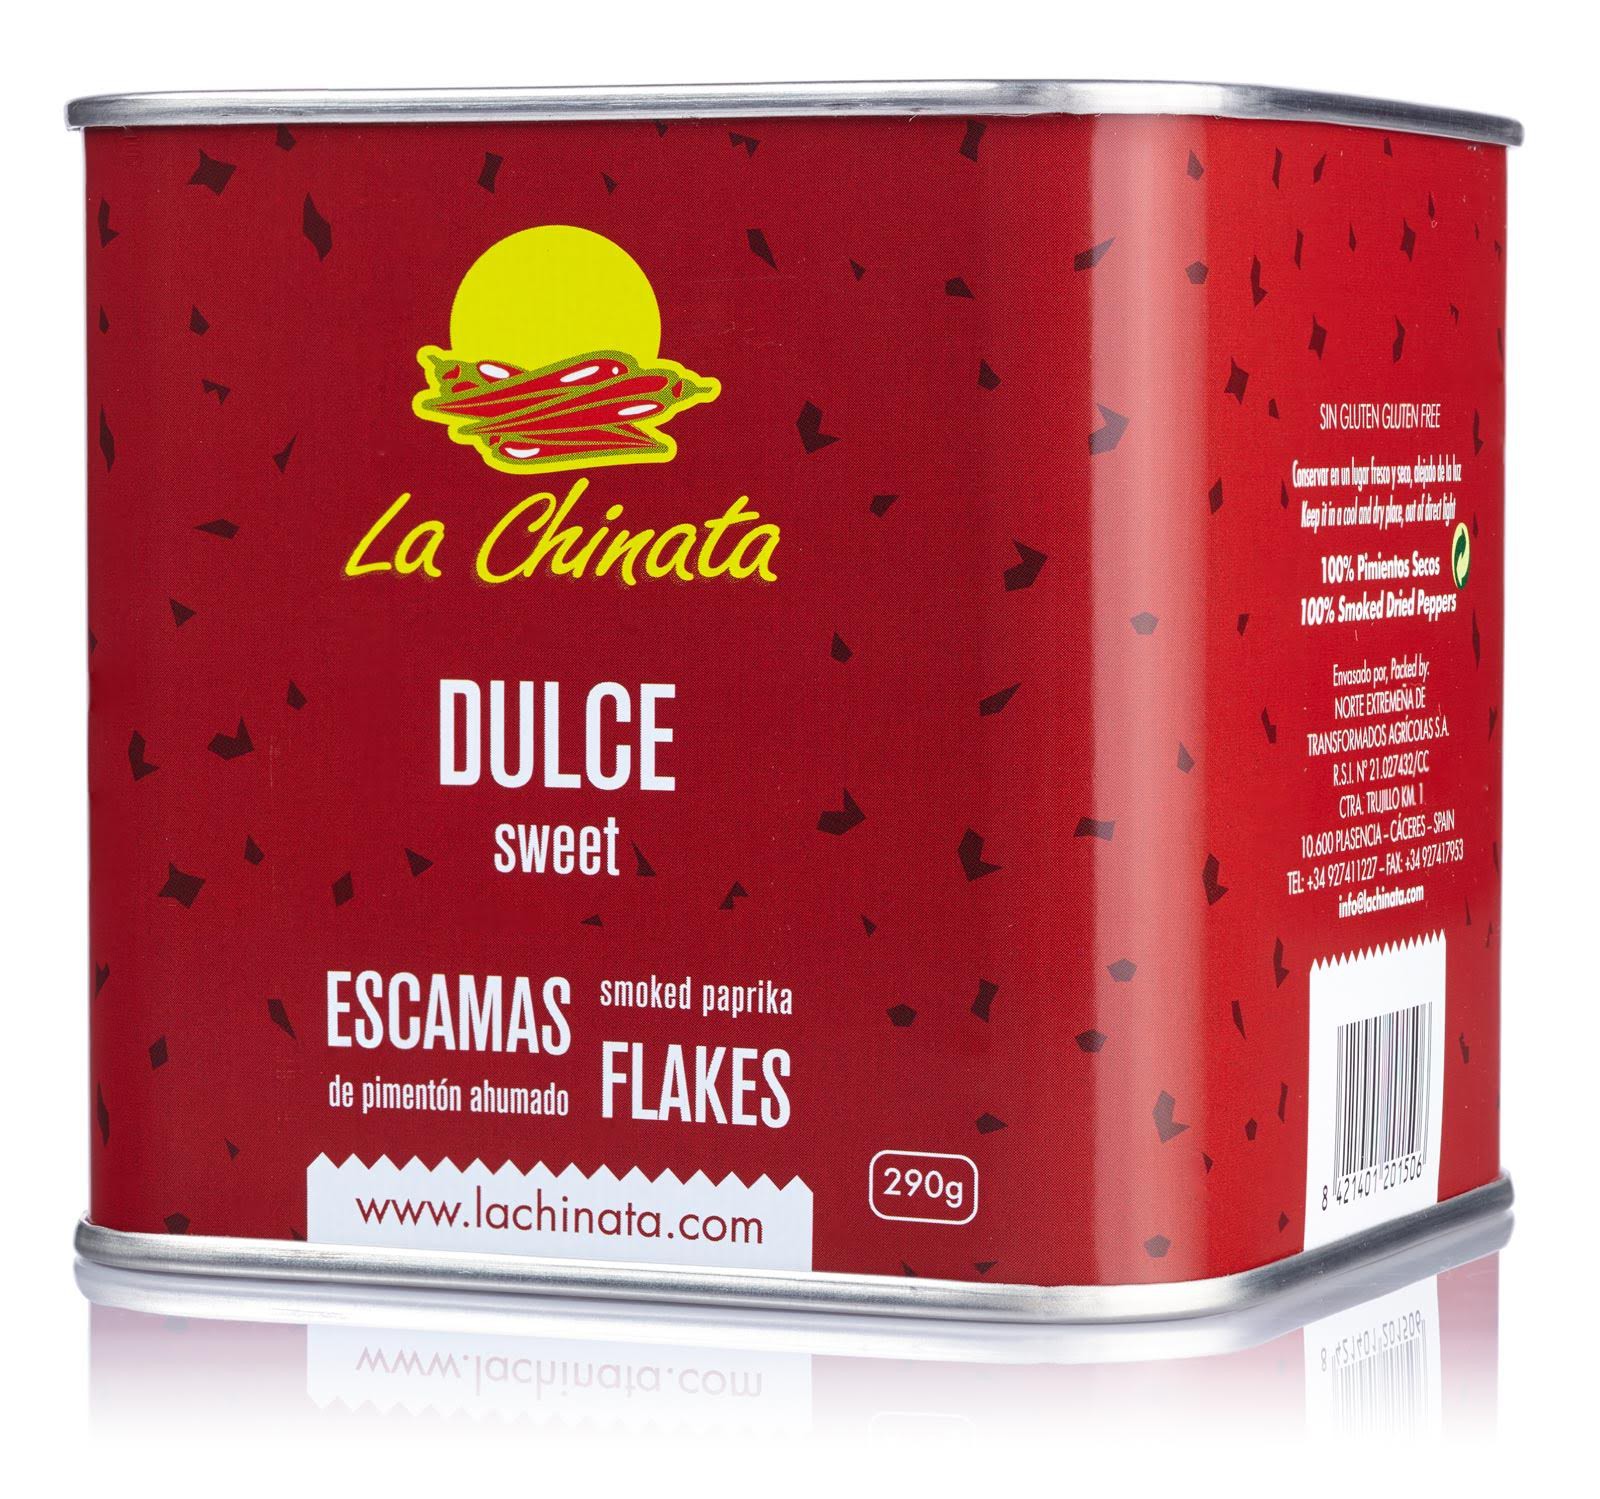 Sweet Smoked Paprika Flakes "La Chinata" 290g Tin